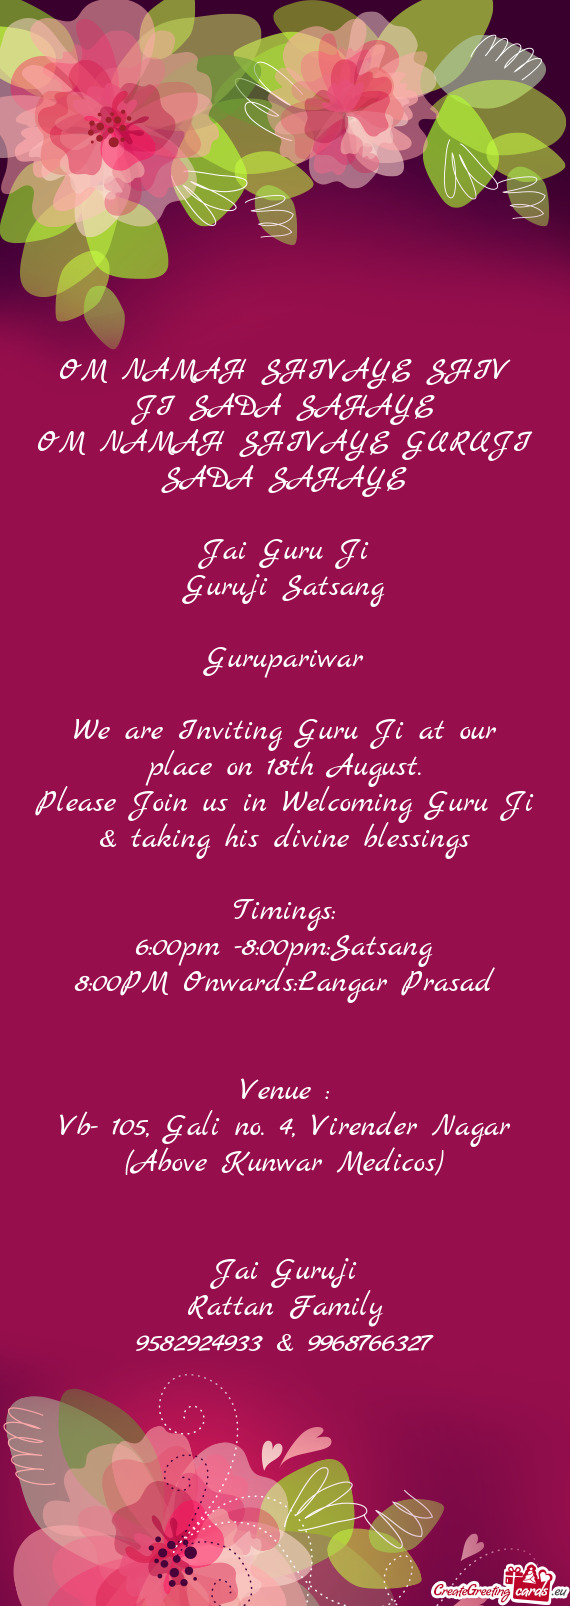 Please Join us in Welcoming Guru Ji & taking his divine blessings